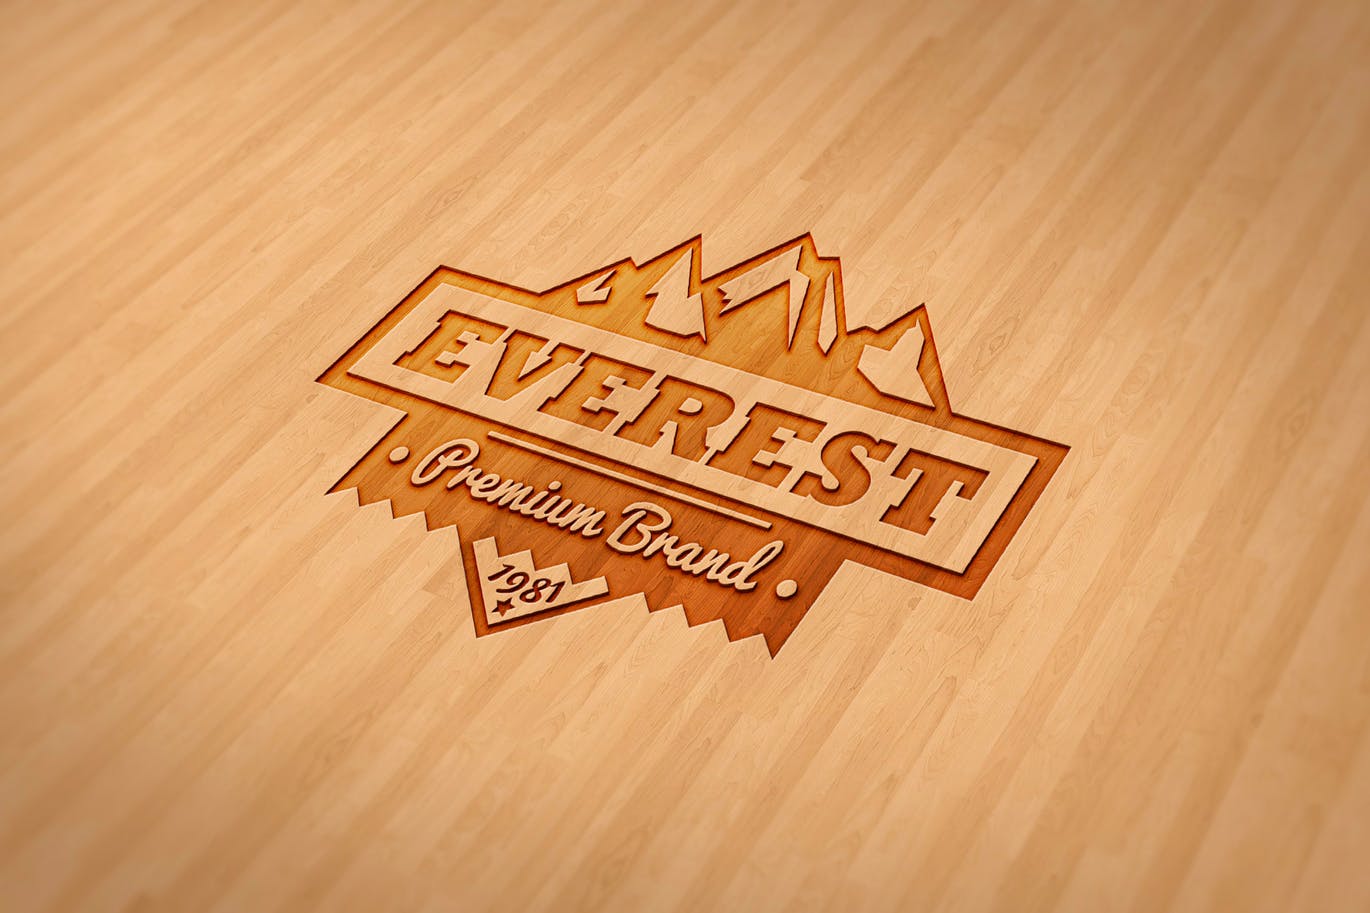 户外运动品牌Logo商标木刻效果图样机模板 Wood Engraved Mockup插图